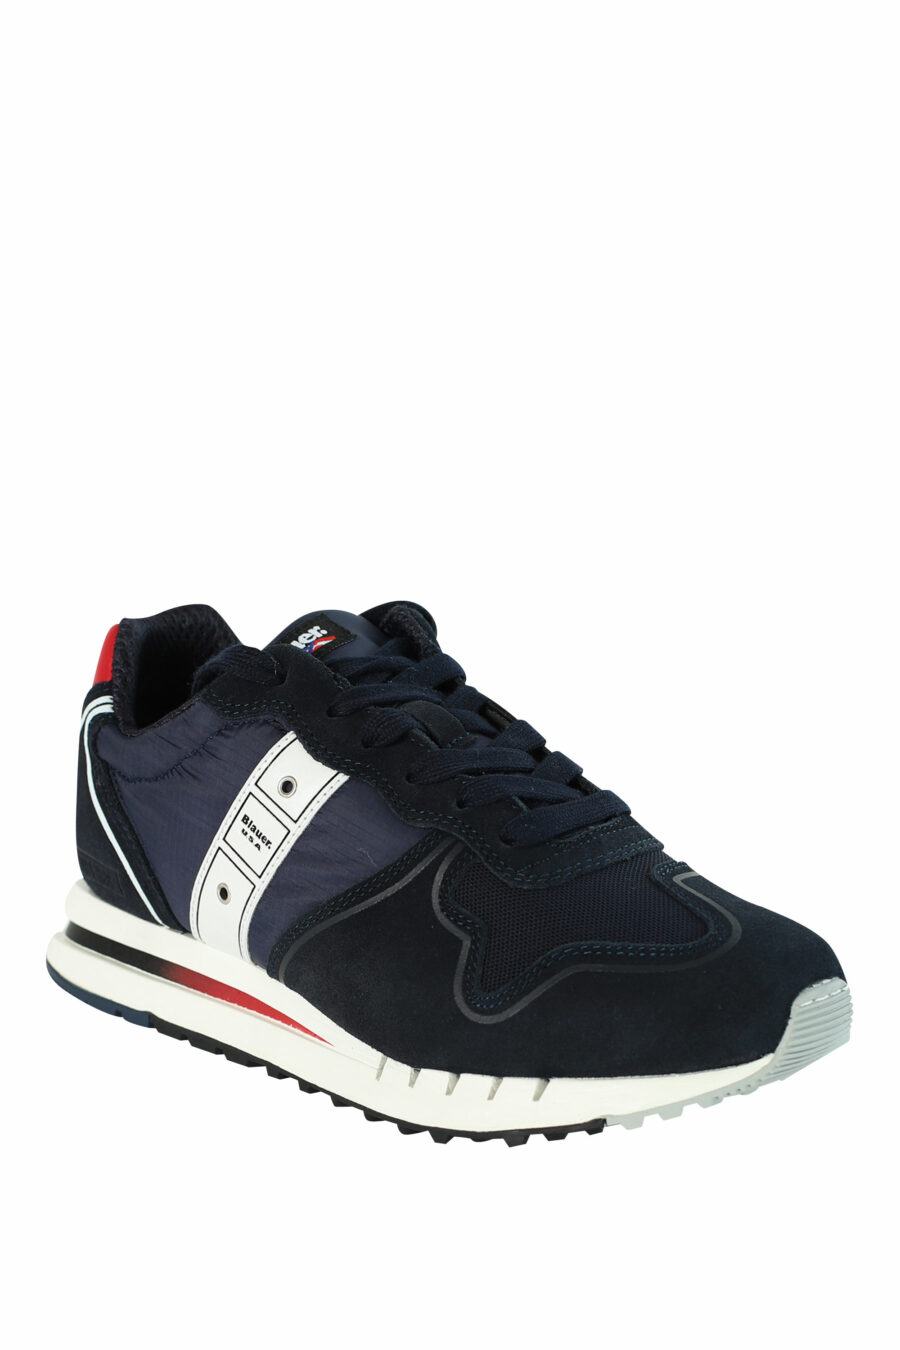 Blaue Schuhe "QUARTZ" mit roten Details - 8058156499454 2